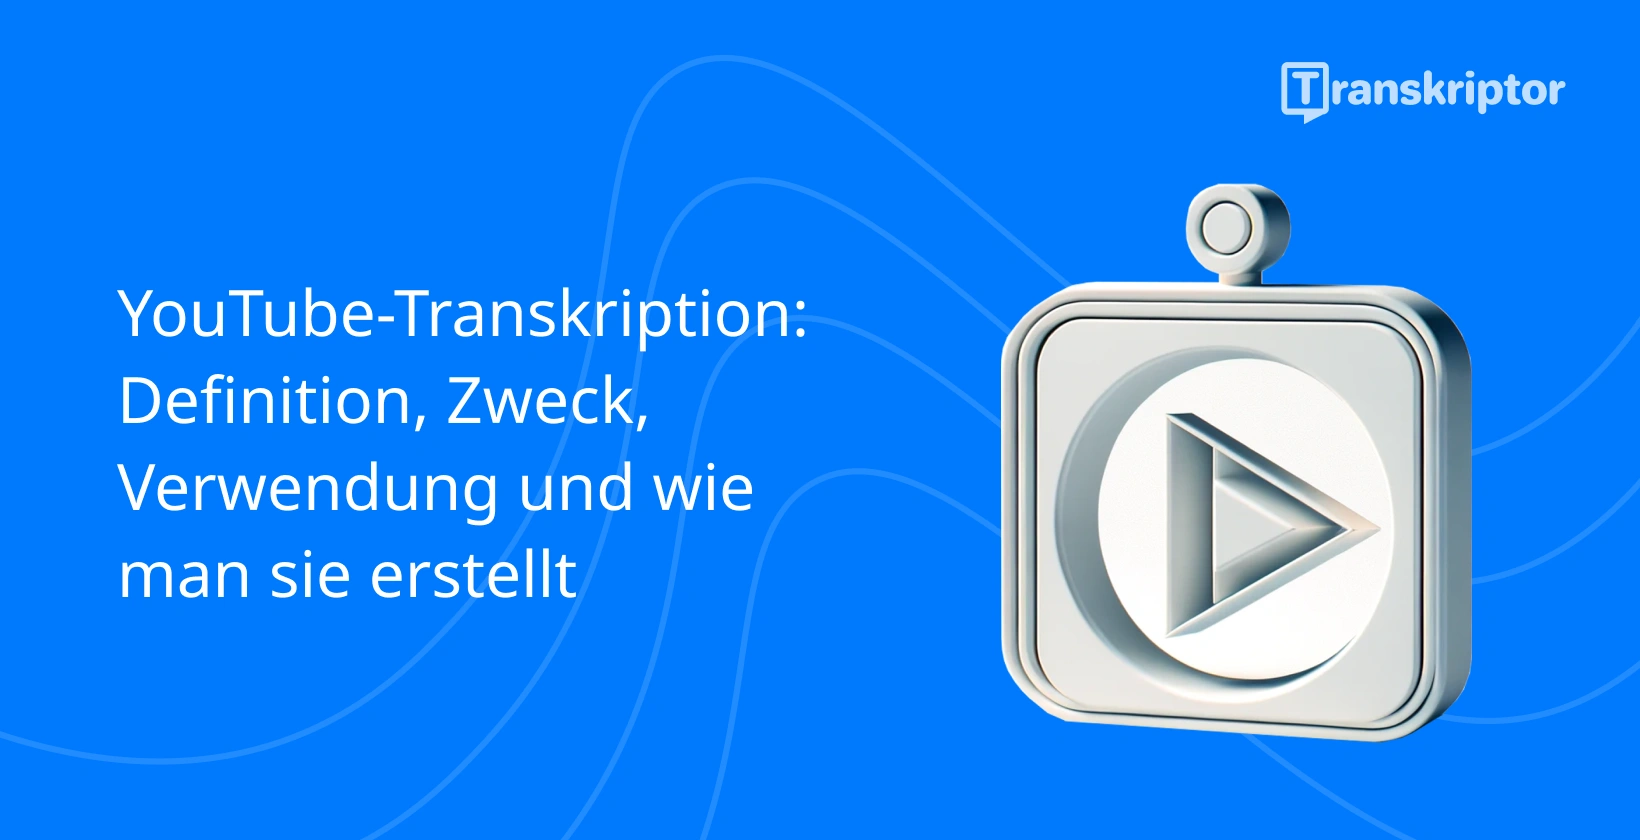 Transkribieren Sie YouTube Shorts symbolisiert durch eine Wiedergabeschaltfläche und Dokumente in einem 3D-Rahmen auf blauem Hintergrund.